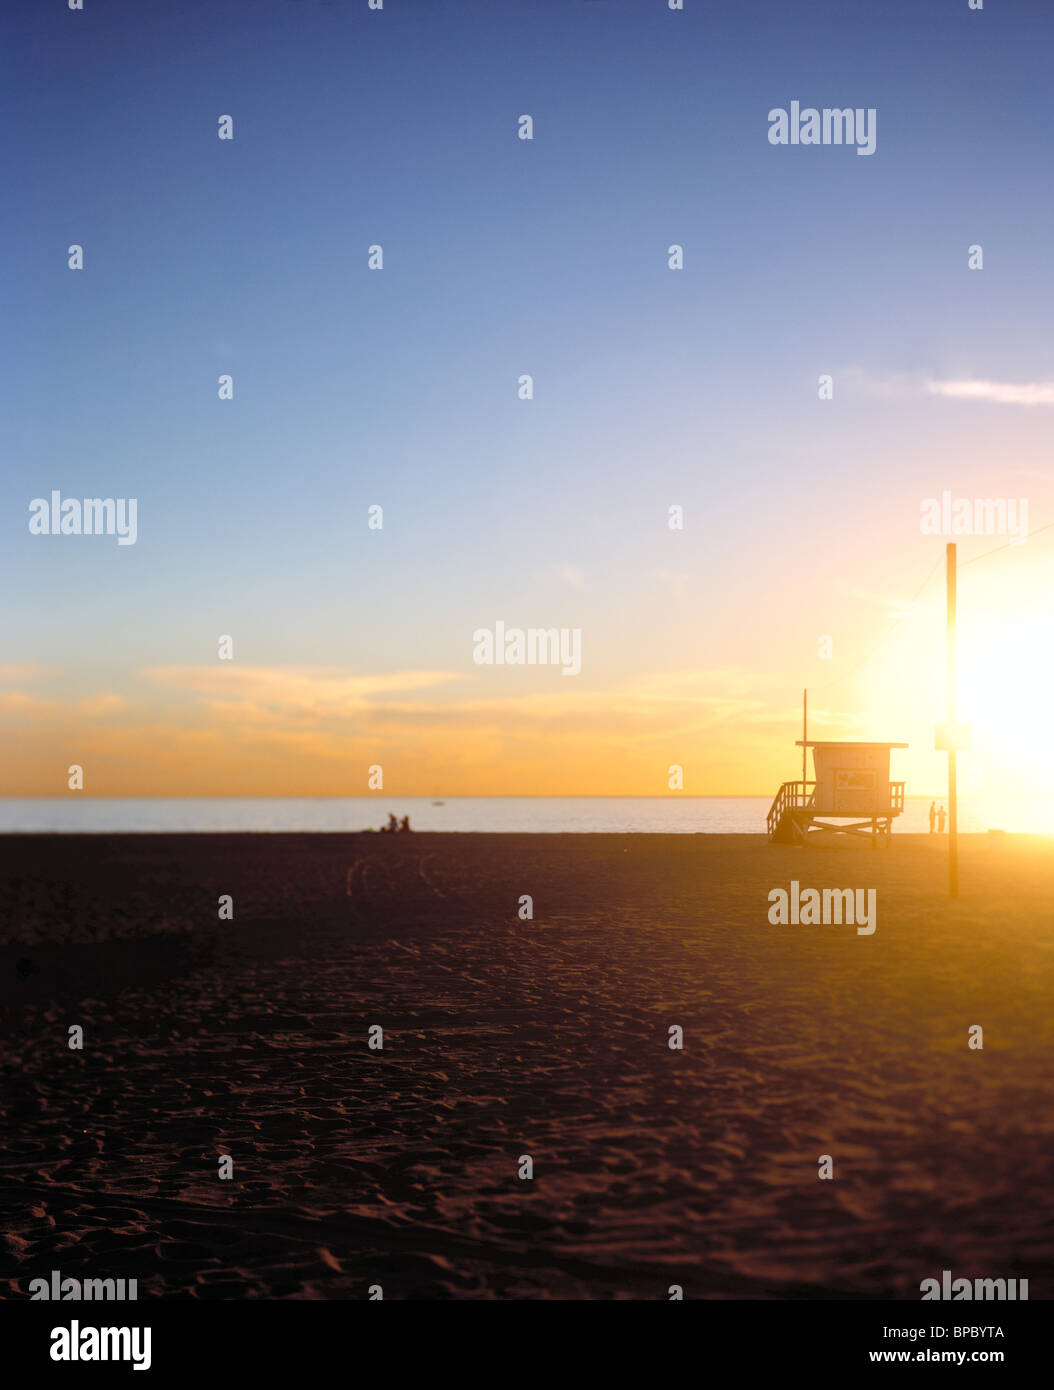 Wählen Sie Fokus / flacher Schärfentiefe Feldbild Rettungsschwimmer-Hütte / stand an einem Strand bei Sonnenuntergang / Sonnenaufgang Stockfoto